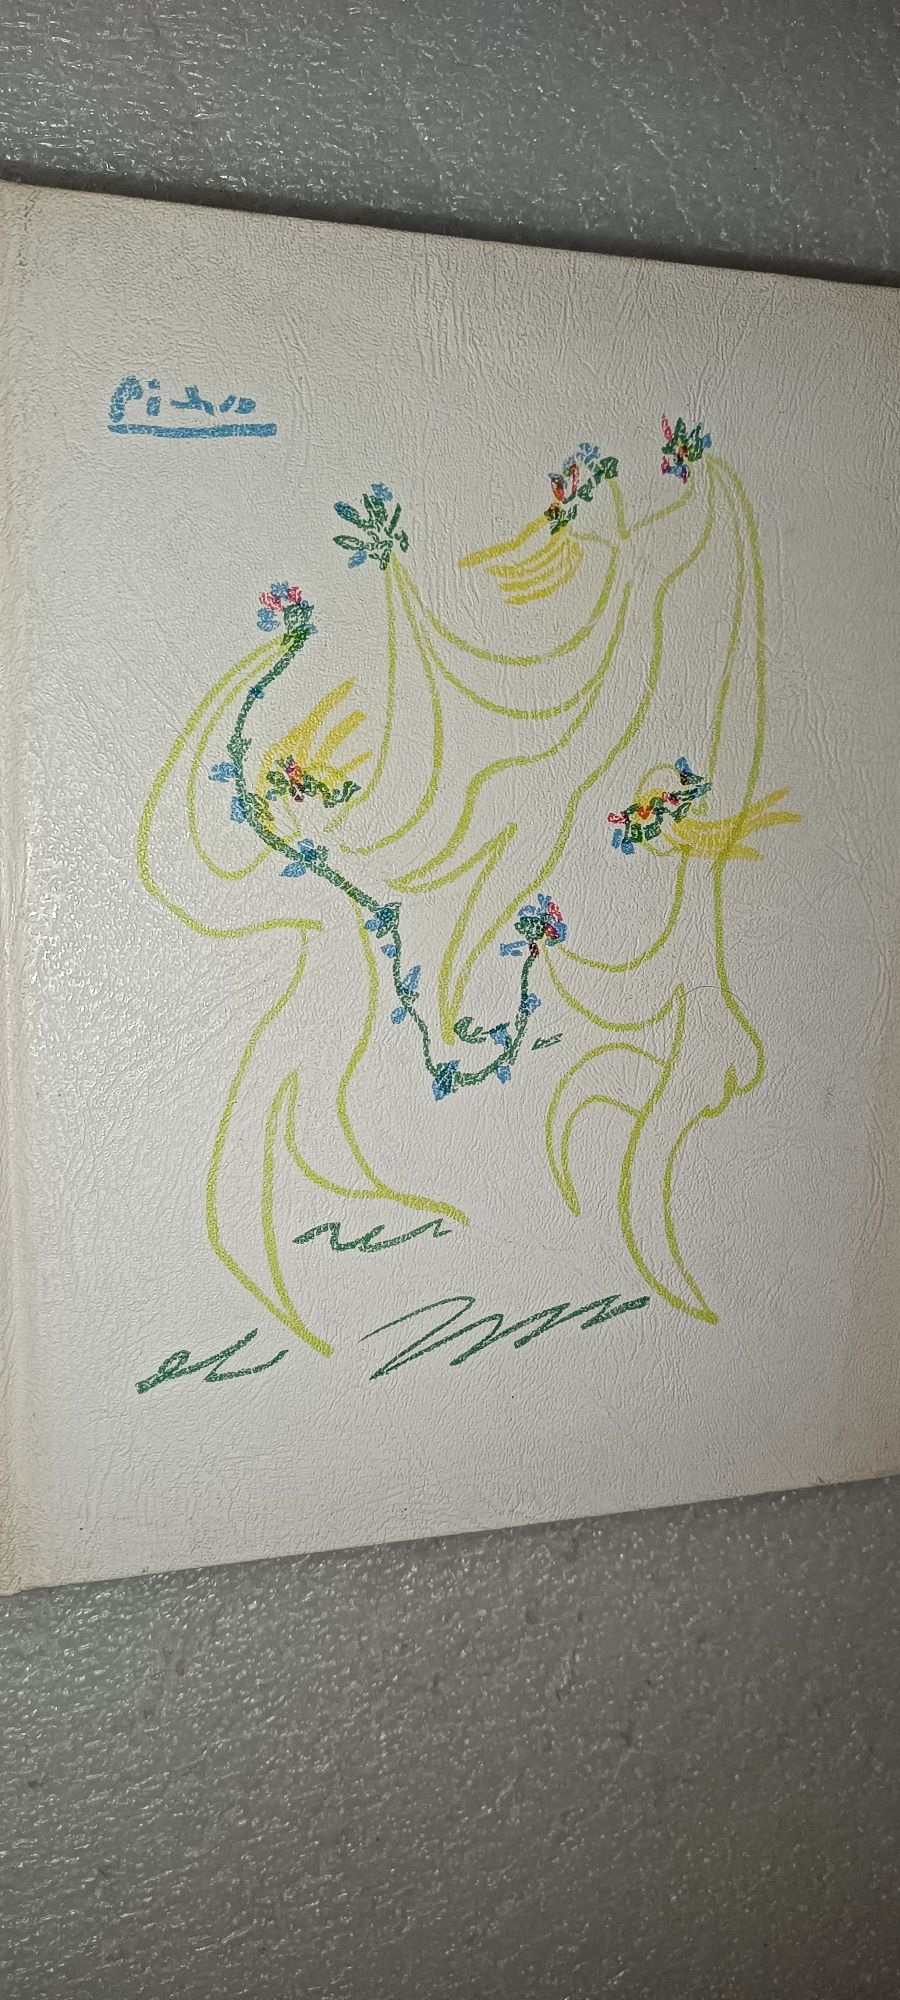 Livro antigo com capa ilustrada Pablo Picasso - Knut Hamsun